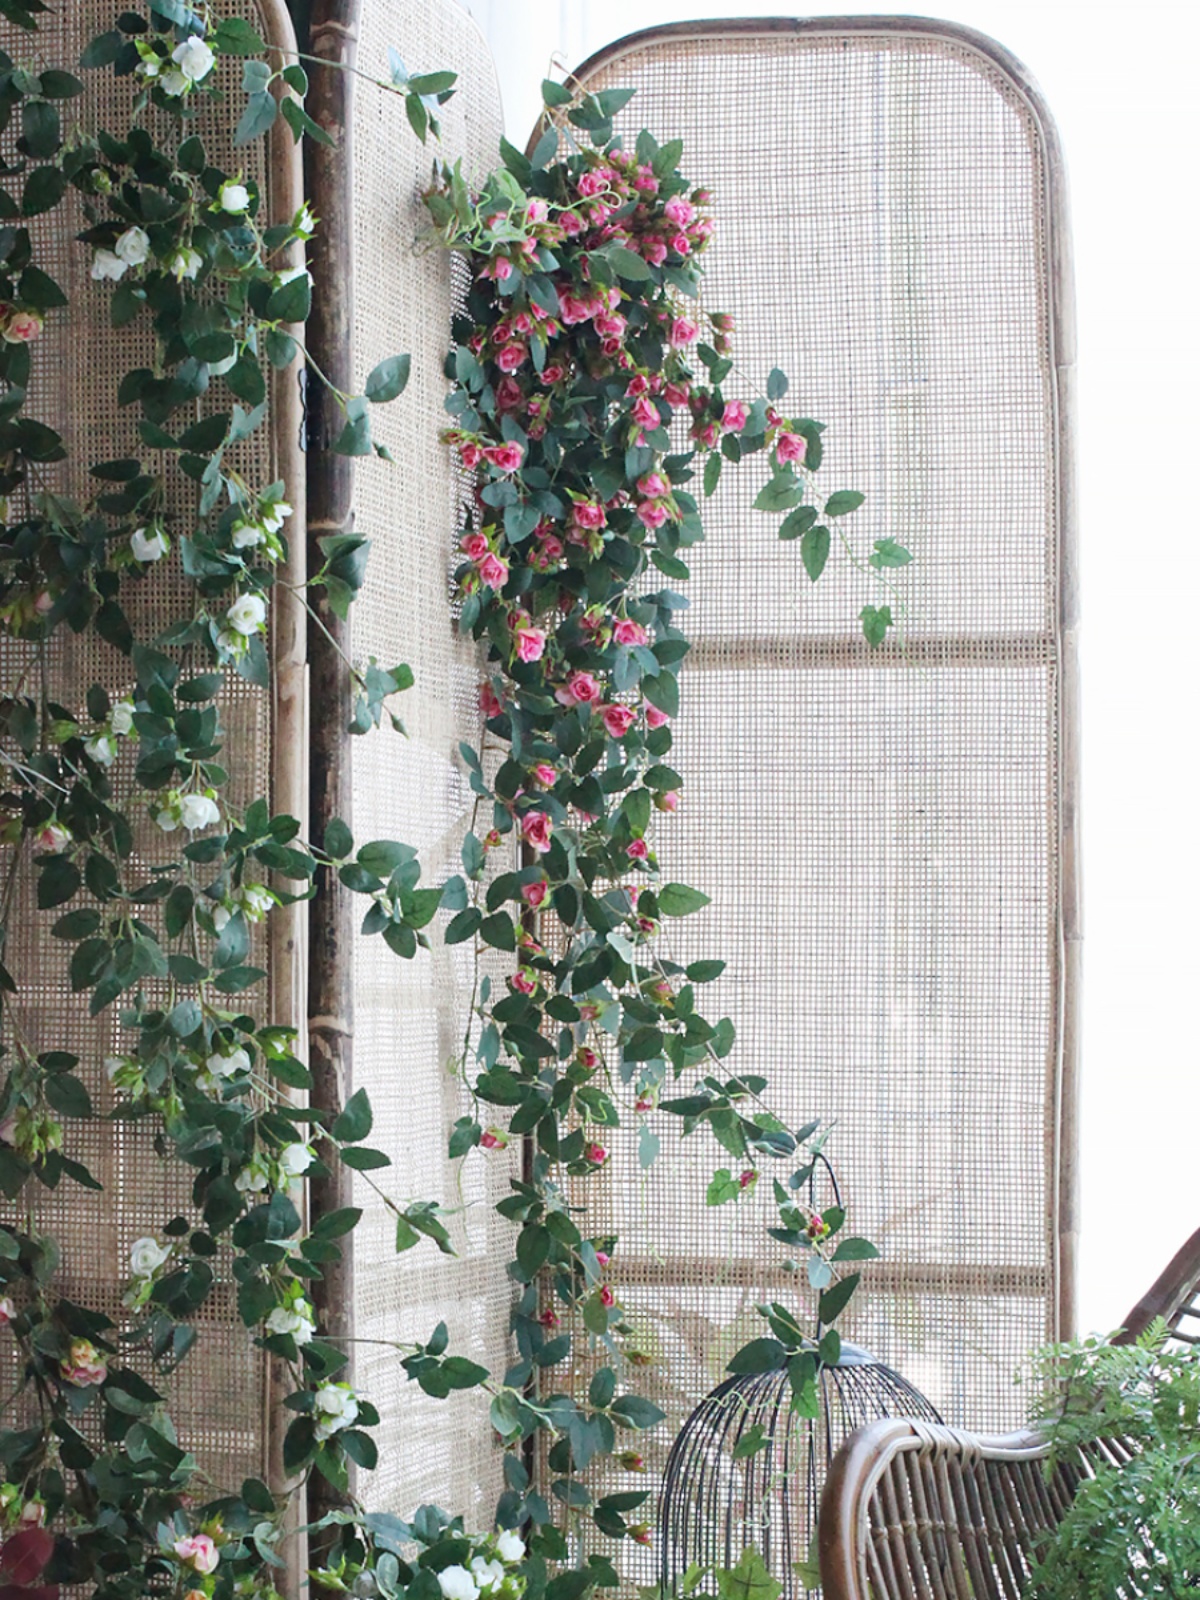 西西里仿真玫瑰藤條家居裝飾空調管道遮蓋隔斷蔓藤